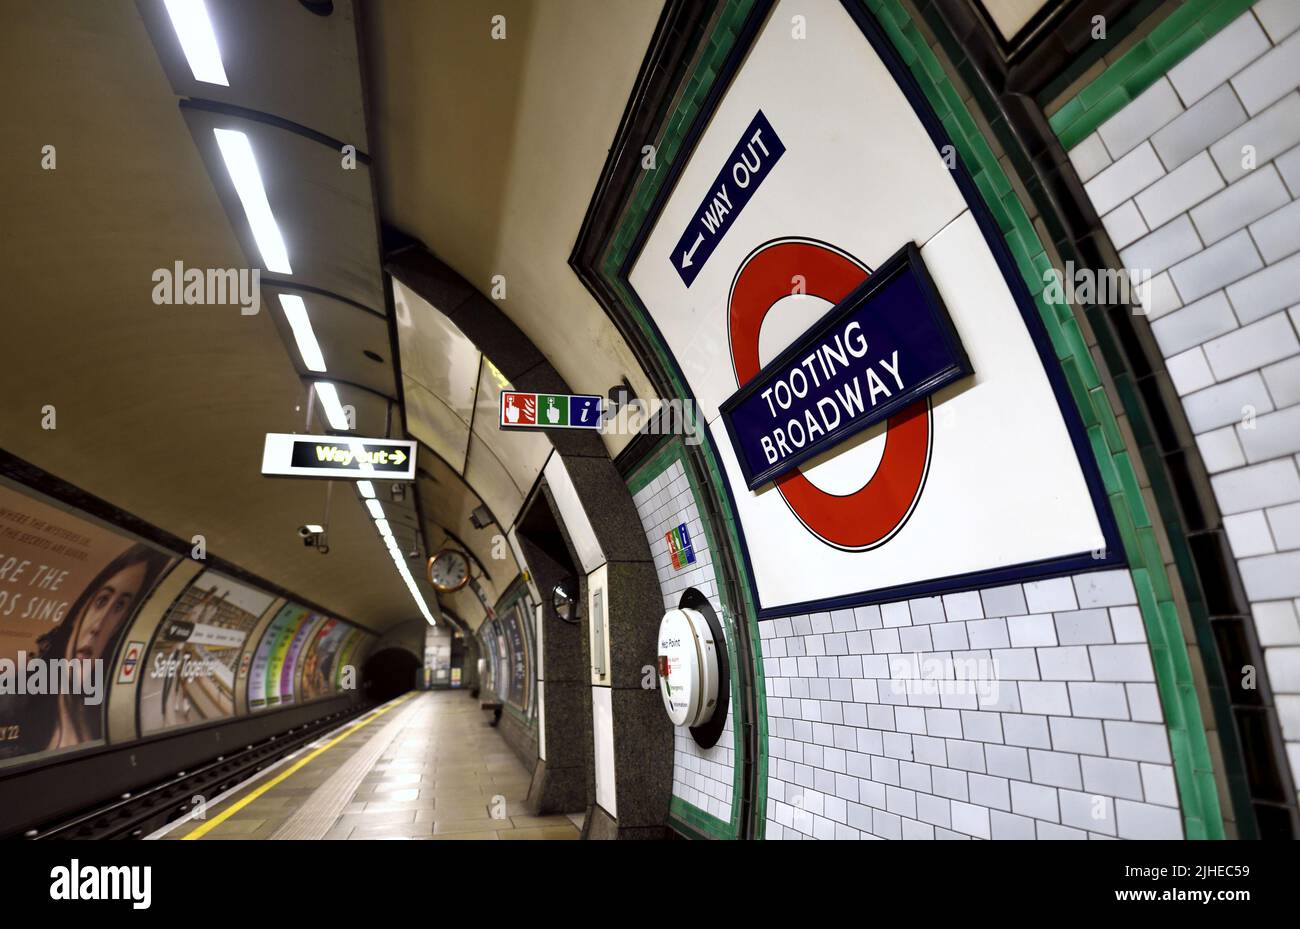 Londra, Inghilterra, Regno Unito. Stazione della metropolitana di Tooting Broadway Foto Stock